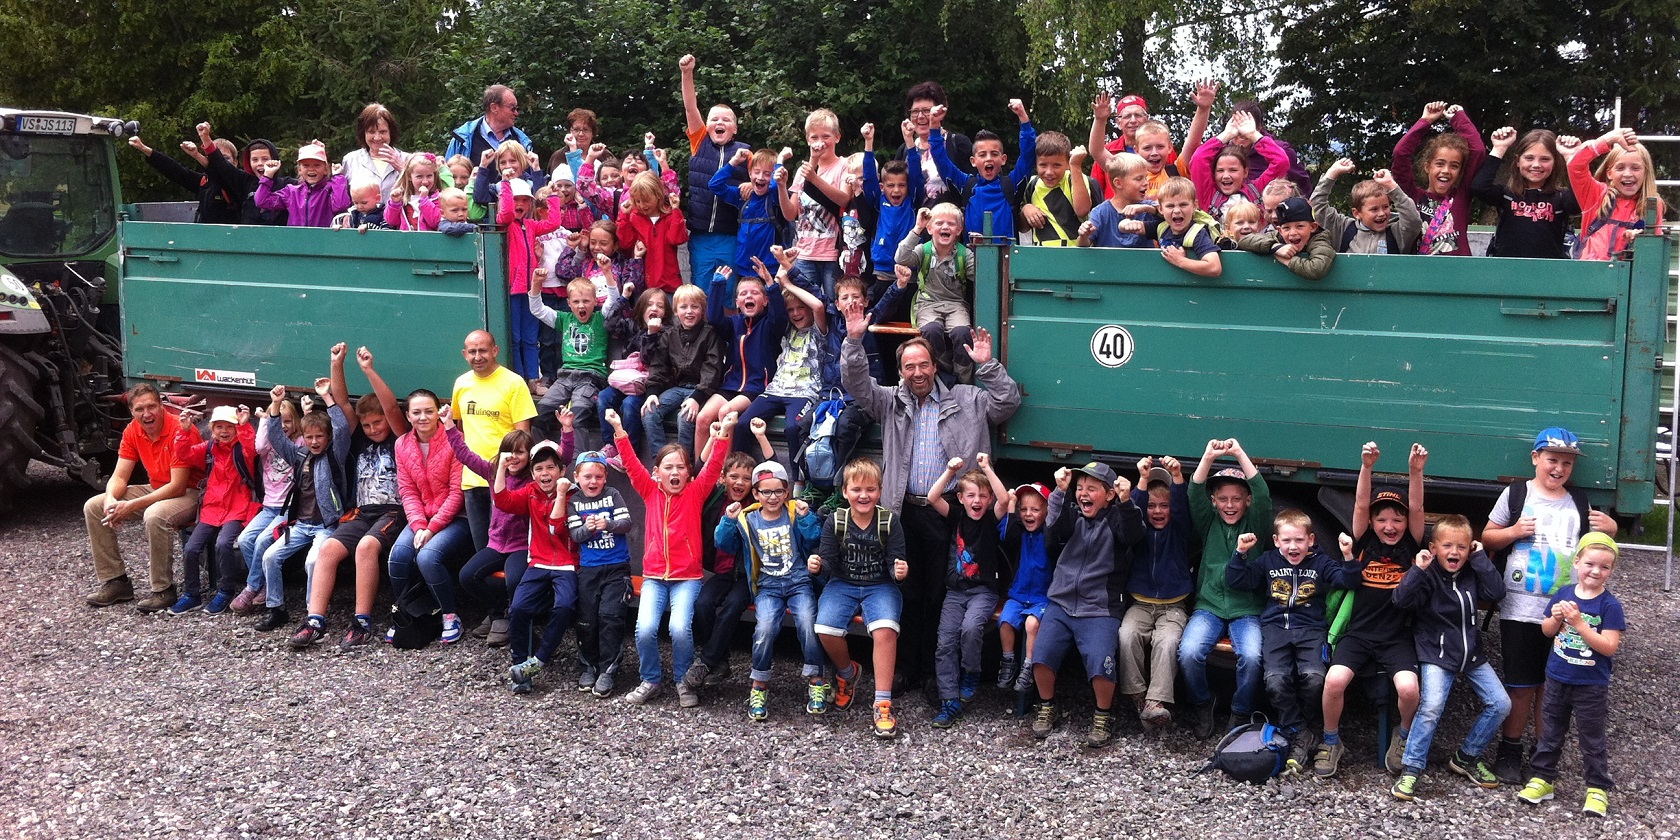 CDU gestaltet aktiv Hüfinger Kinderferienprogramm - 70 Kinder erleben tollen Tag in der Natur